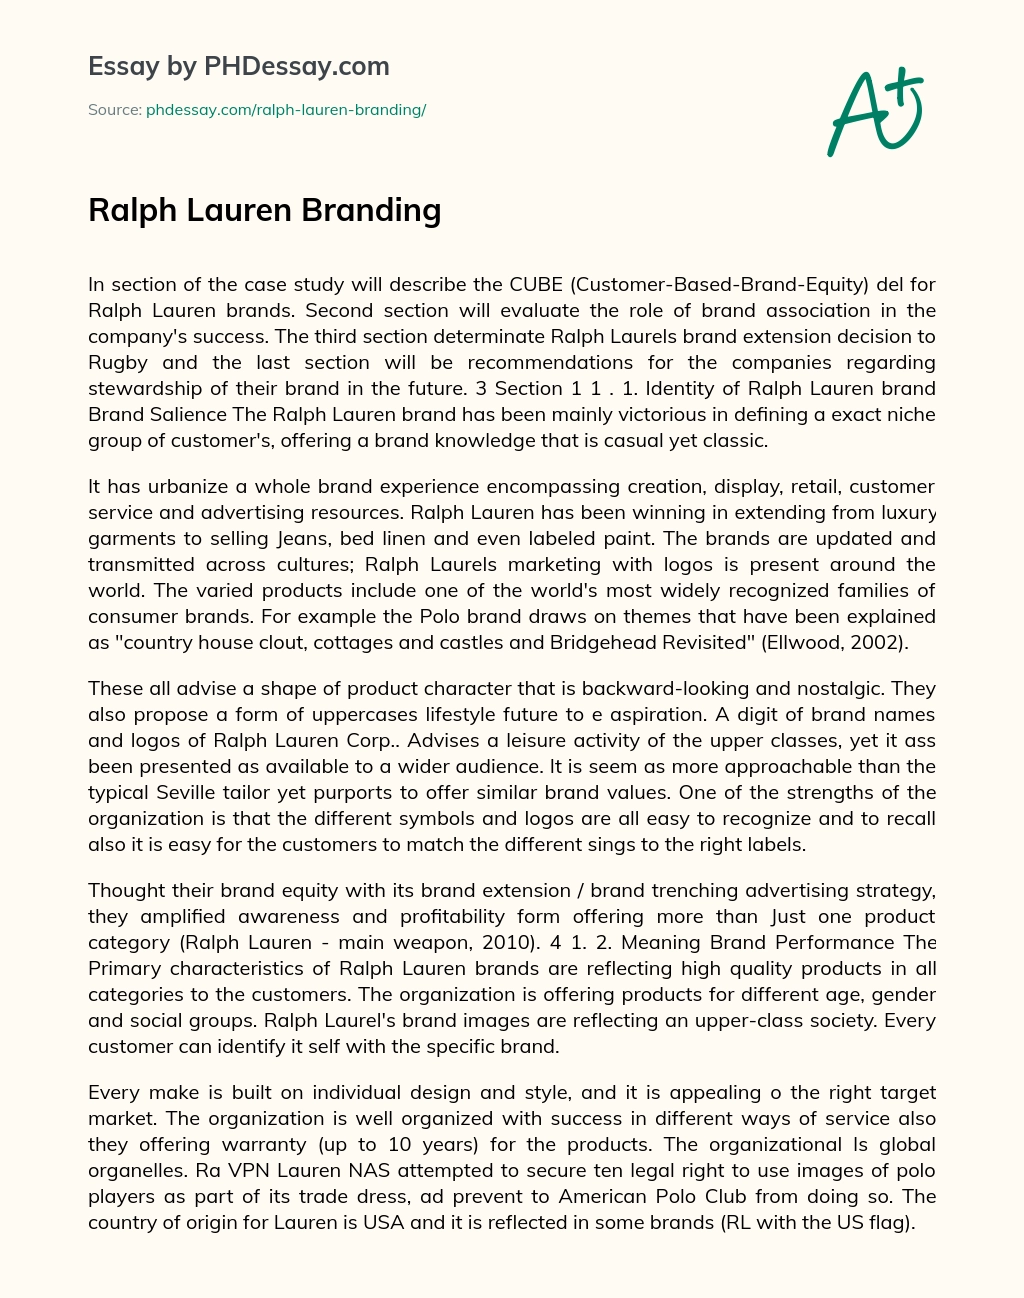 Ralph Lauren Branding essay